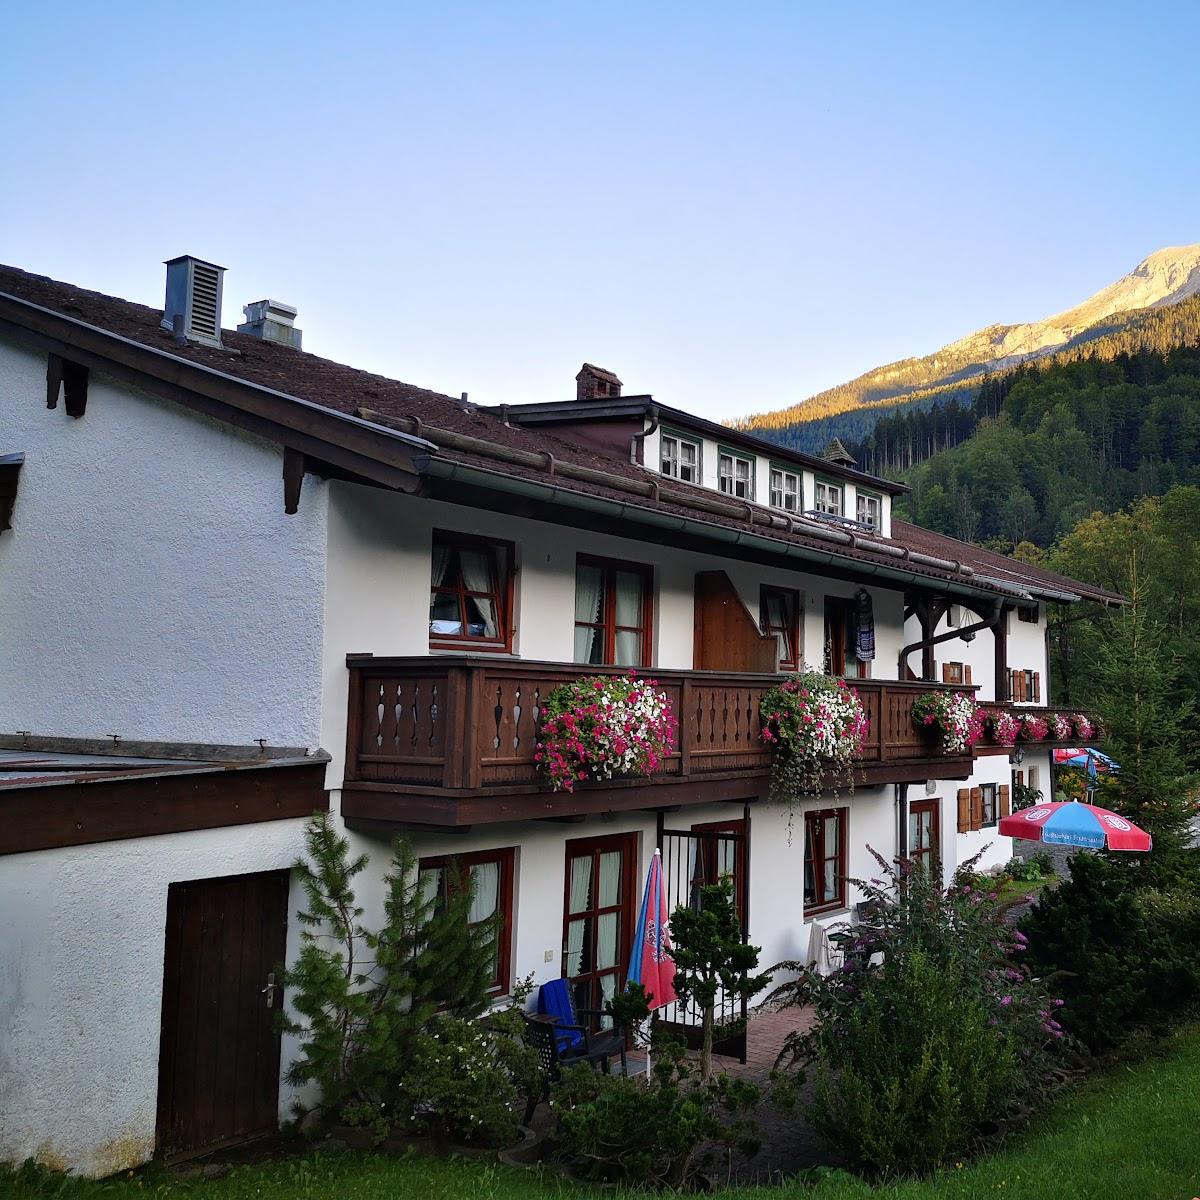 Restaurant "Gasthof Altes Forsthaus" in Ramsau bei Berchtesgaden